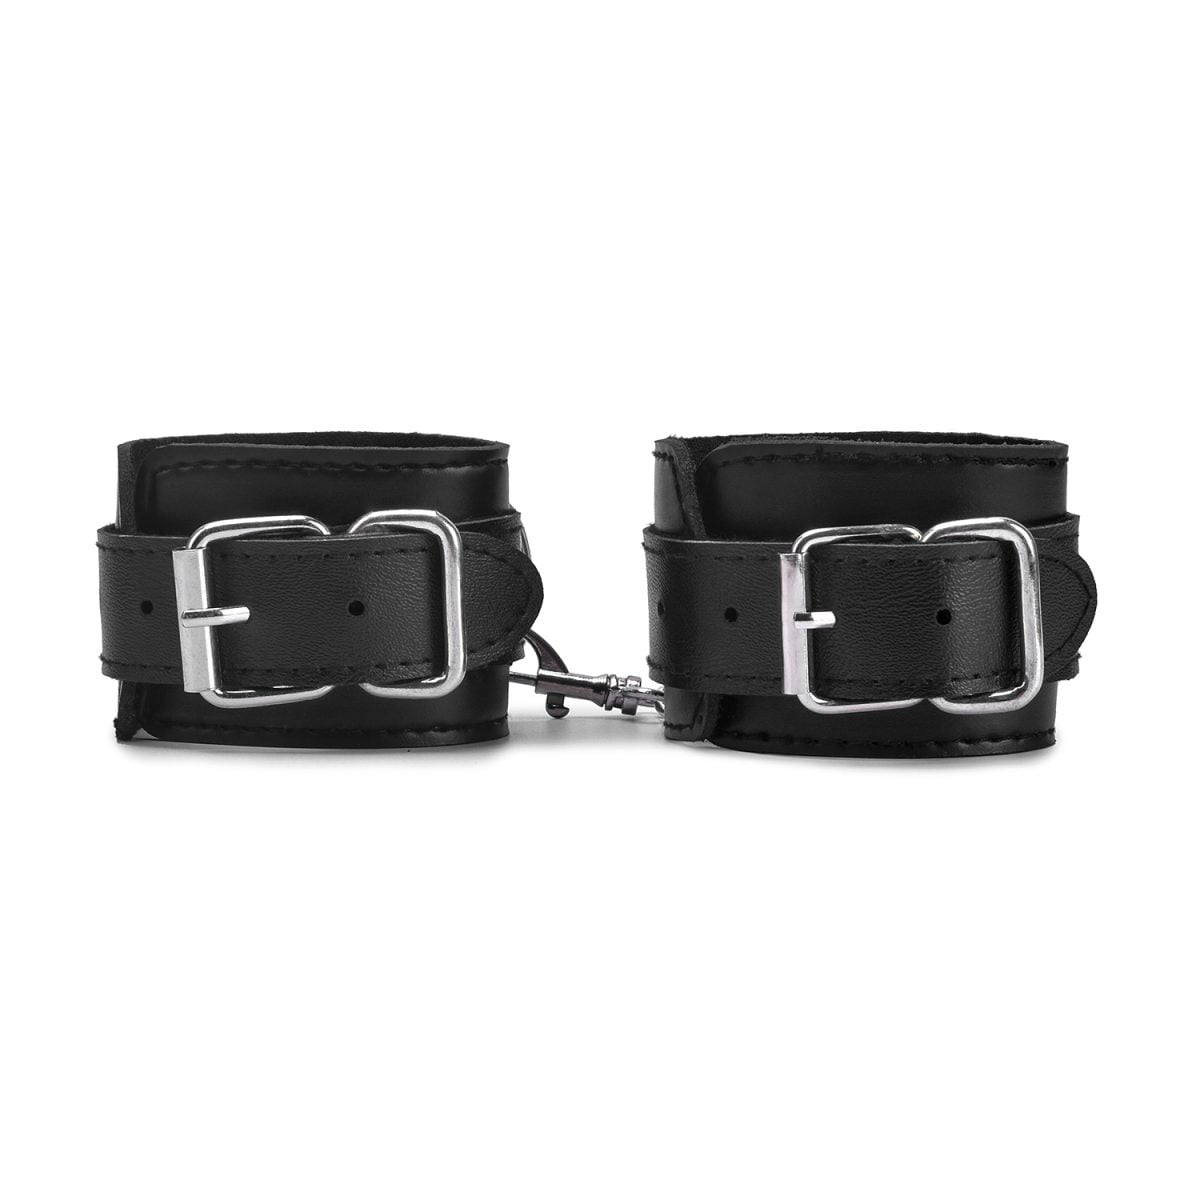 Fine Sport BDSM Sex Bound Leather Handcuffs | Restraints & Handcuffs YDK8010 BDSM Sex Bound Leather Handcuffs 2